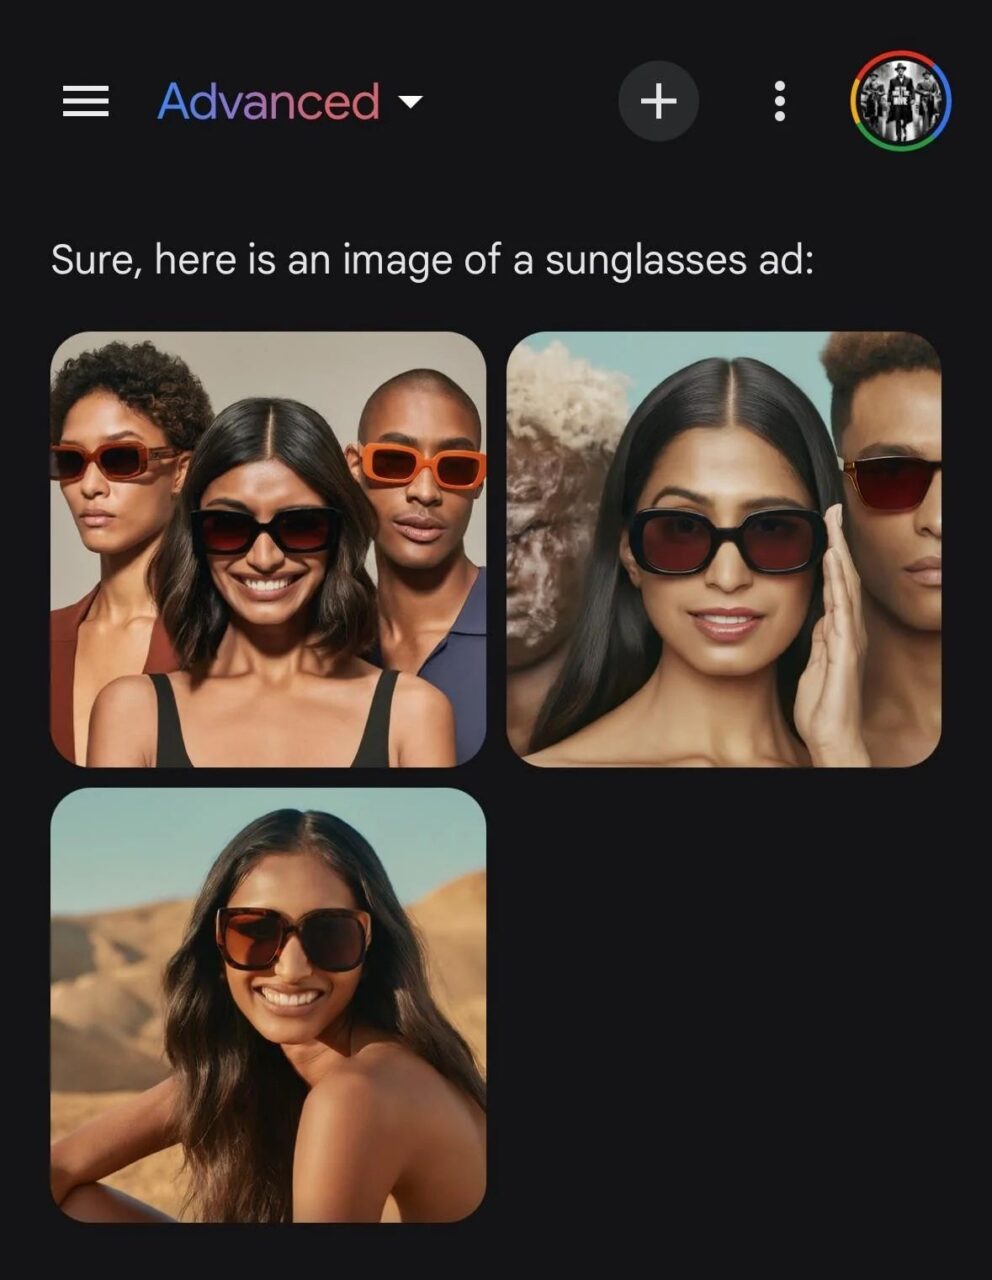 Reklama okularów przeciwsłonecznych z czterema osobami na górnym zdjęciu i uśmiechniętą kobietą w okularach przeciwsłonecznych na dolnym zdjęciu.